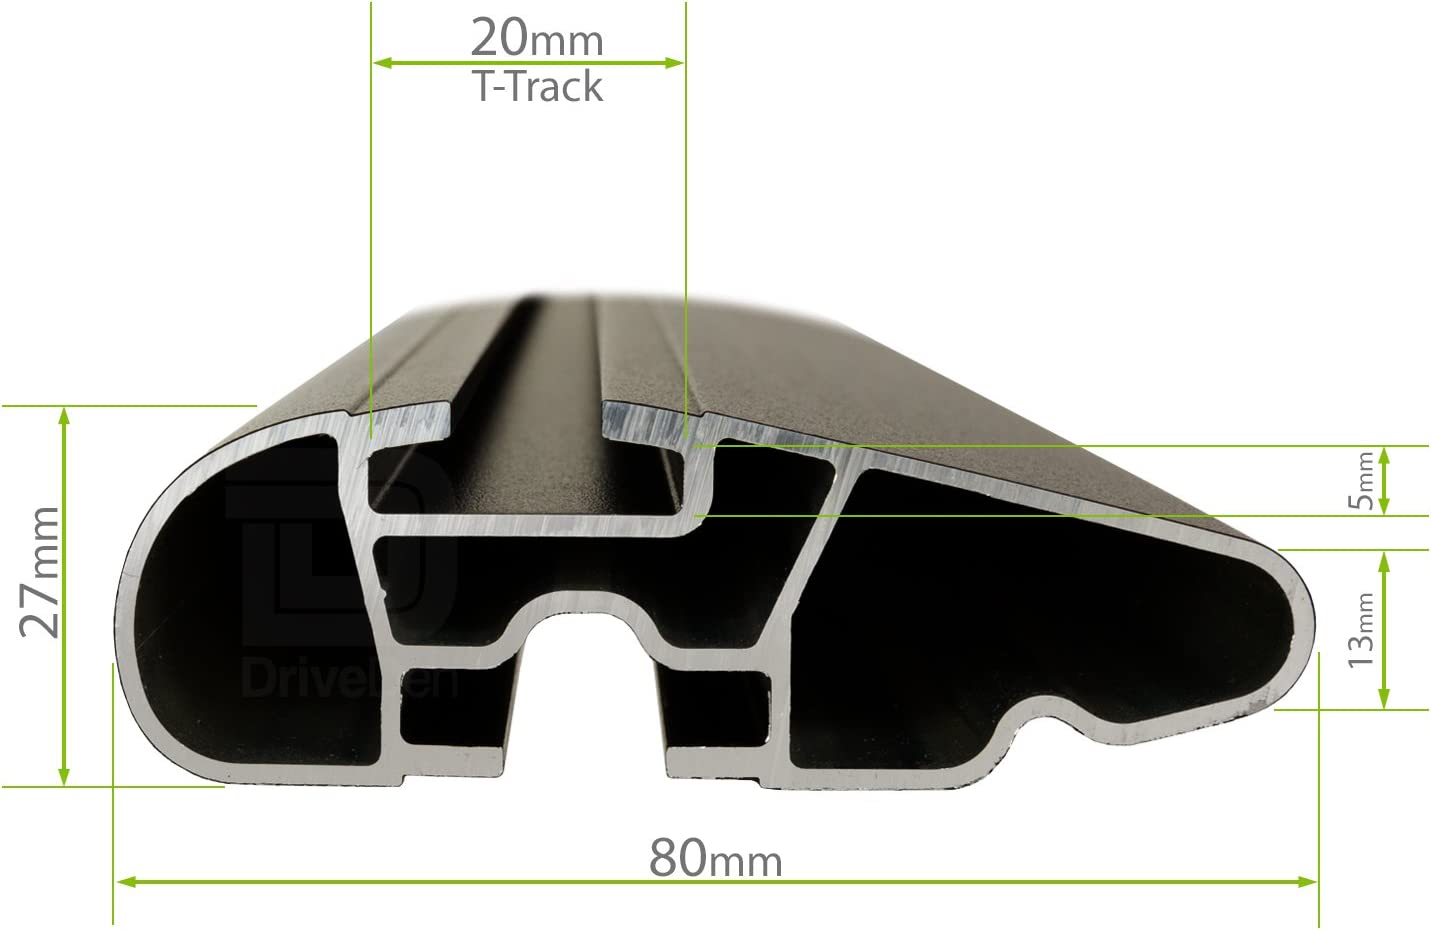 Barre portapacchi da abbinare al kit LuxHX1 - Skoda Fabia Wagon 5 porte anno 2015> (con corrimano alto)